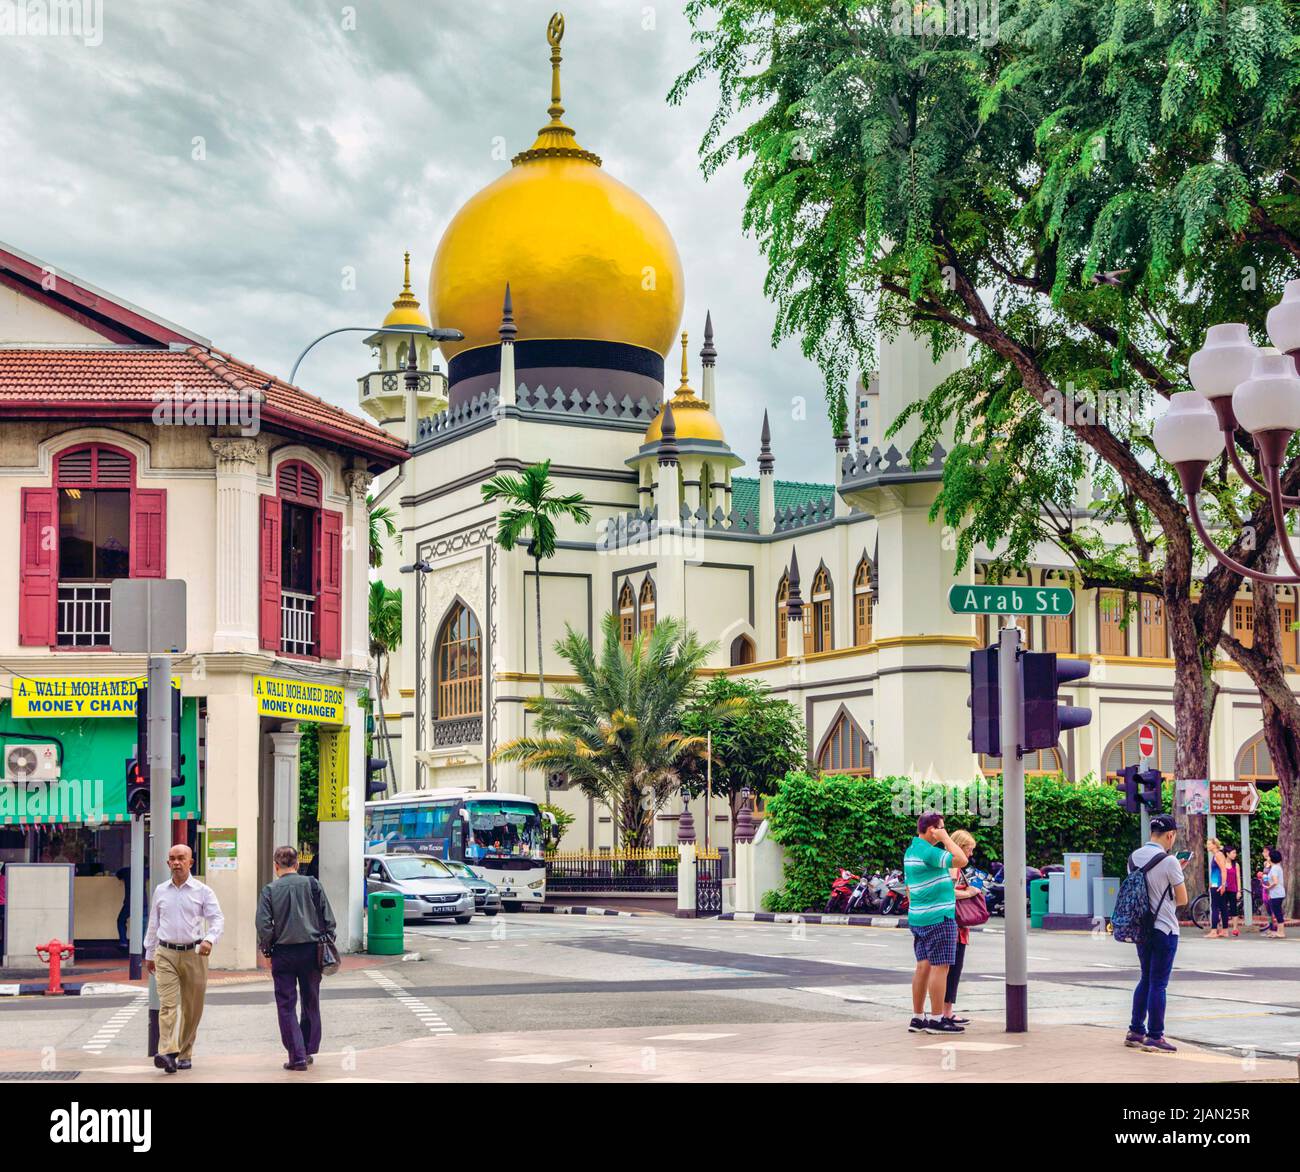 La Moschea del Sultano, o Sultano Masjid, con la sua cupola dorata. Repubblica di Singapore. La moschea è stata designata monumento nazionale. Foto Stock